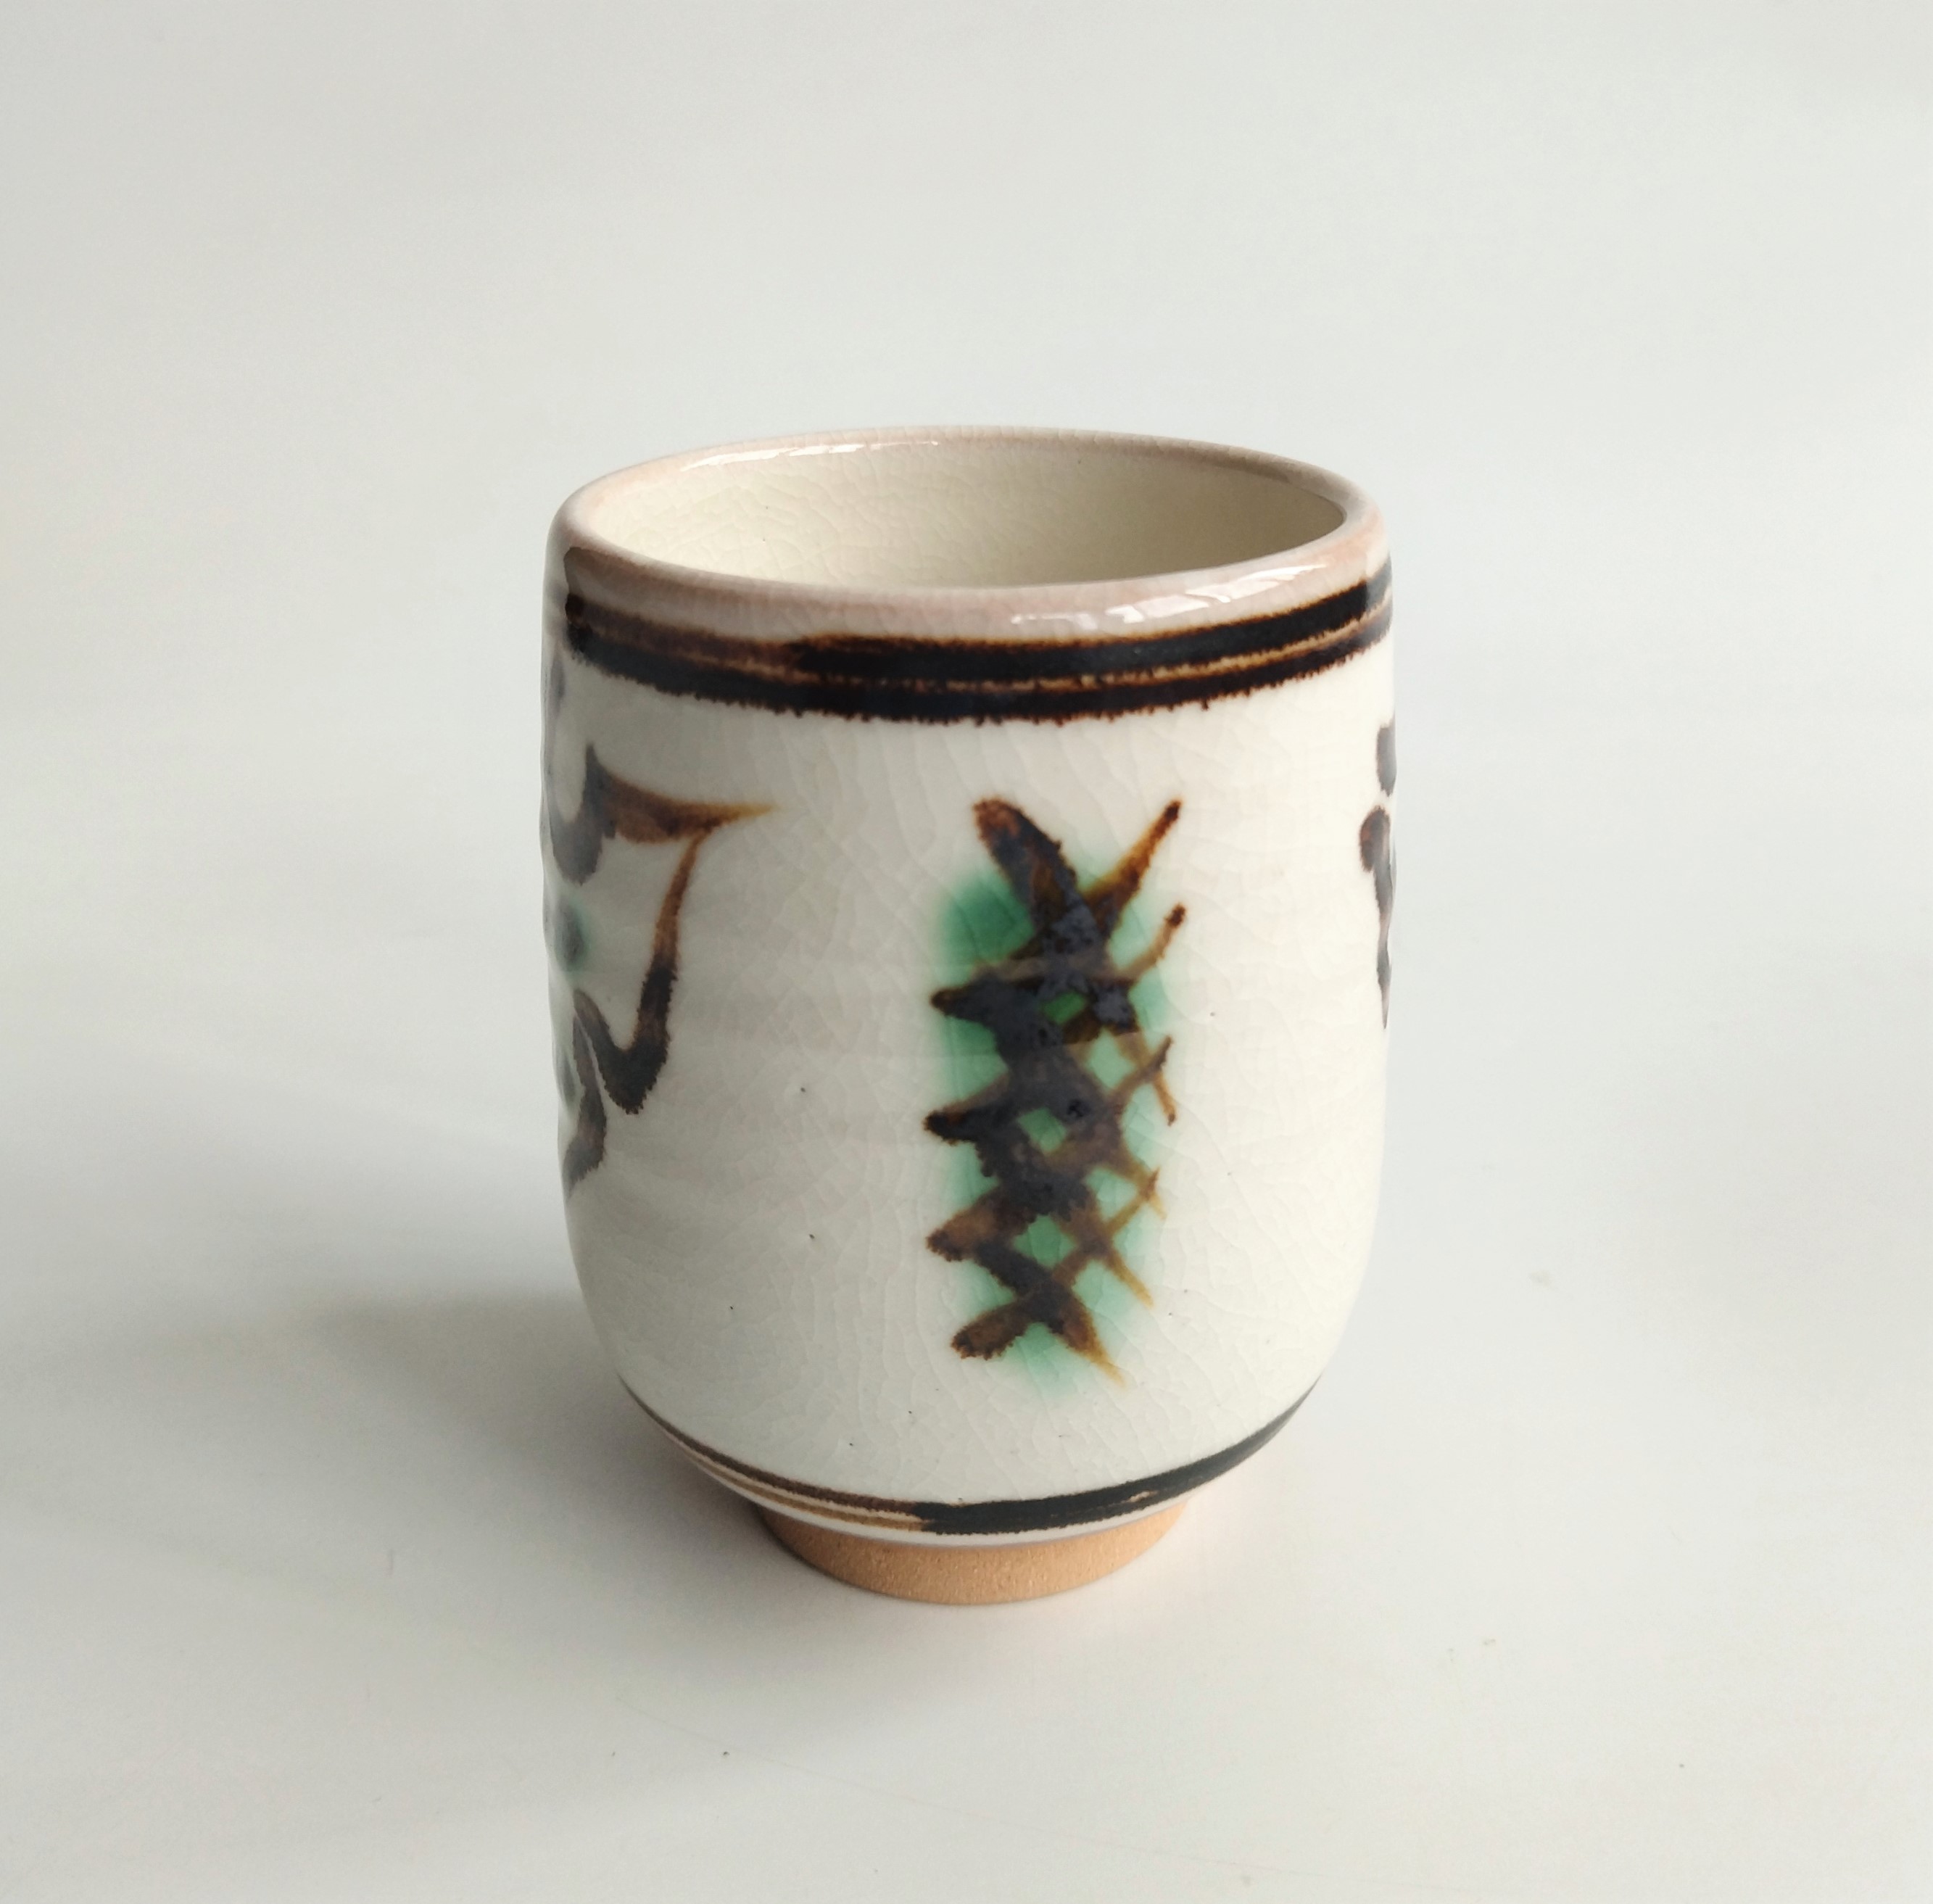 日本中古瓷器 松斋 铁绘汤吞杯 陶瓷茶杯 水杯 全品带木盒 包邮